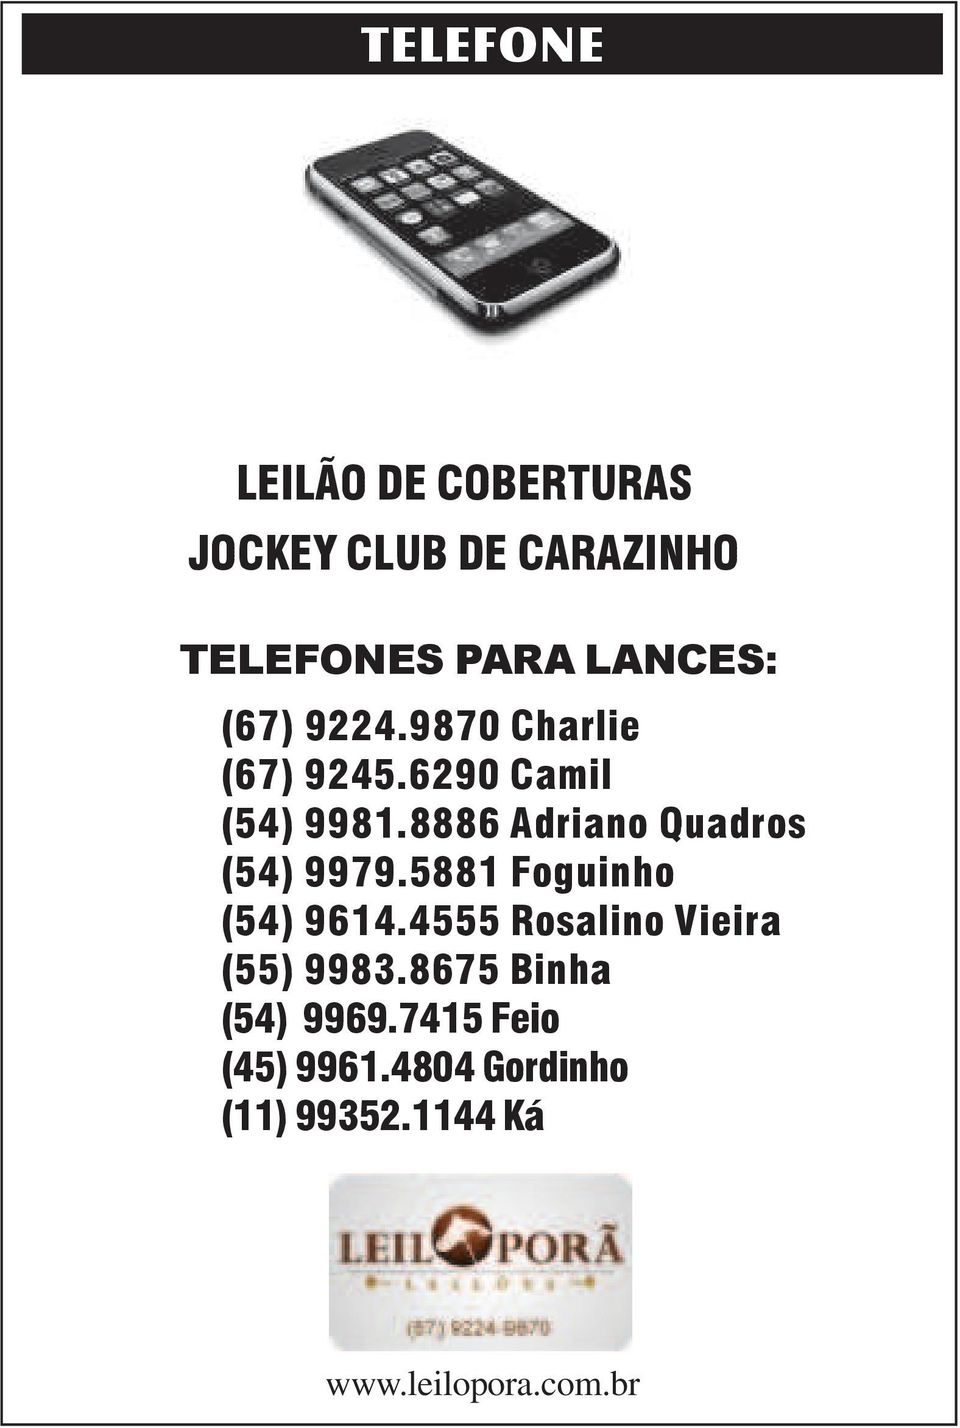 8886 Adriano Quadros (54) 9979.5881 Foguinho (54) 9614.